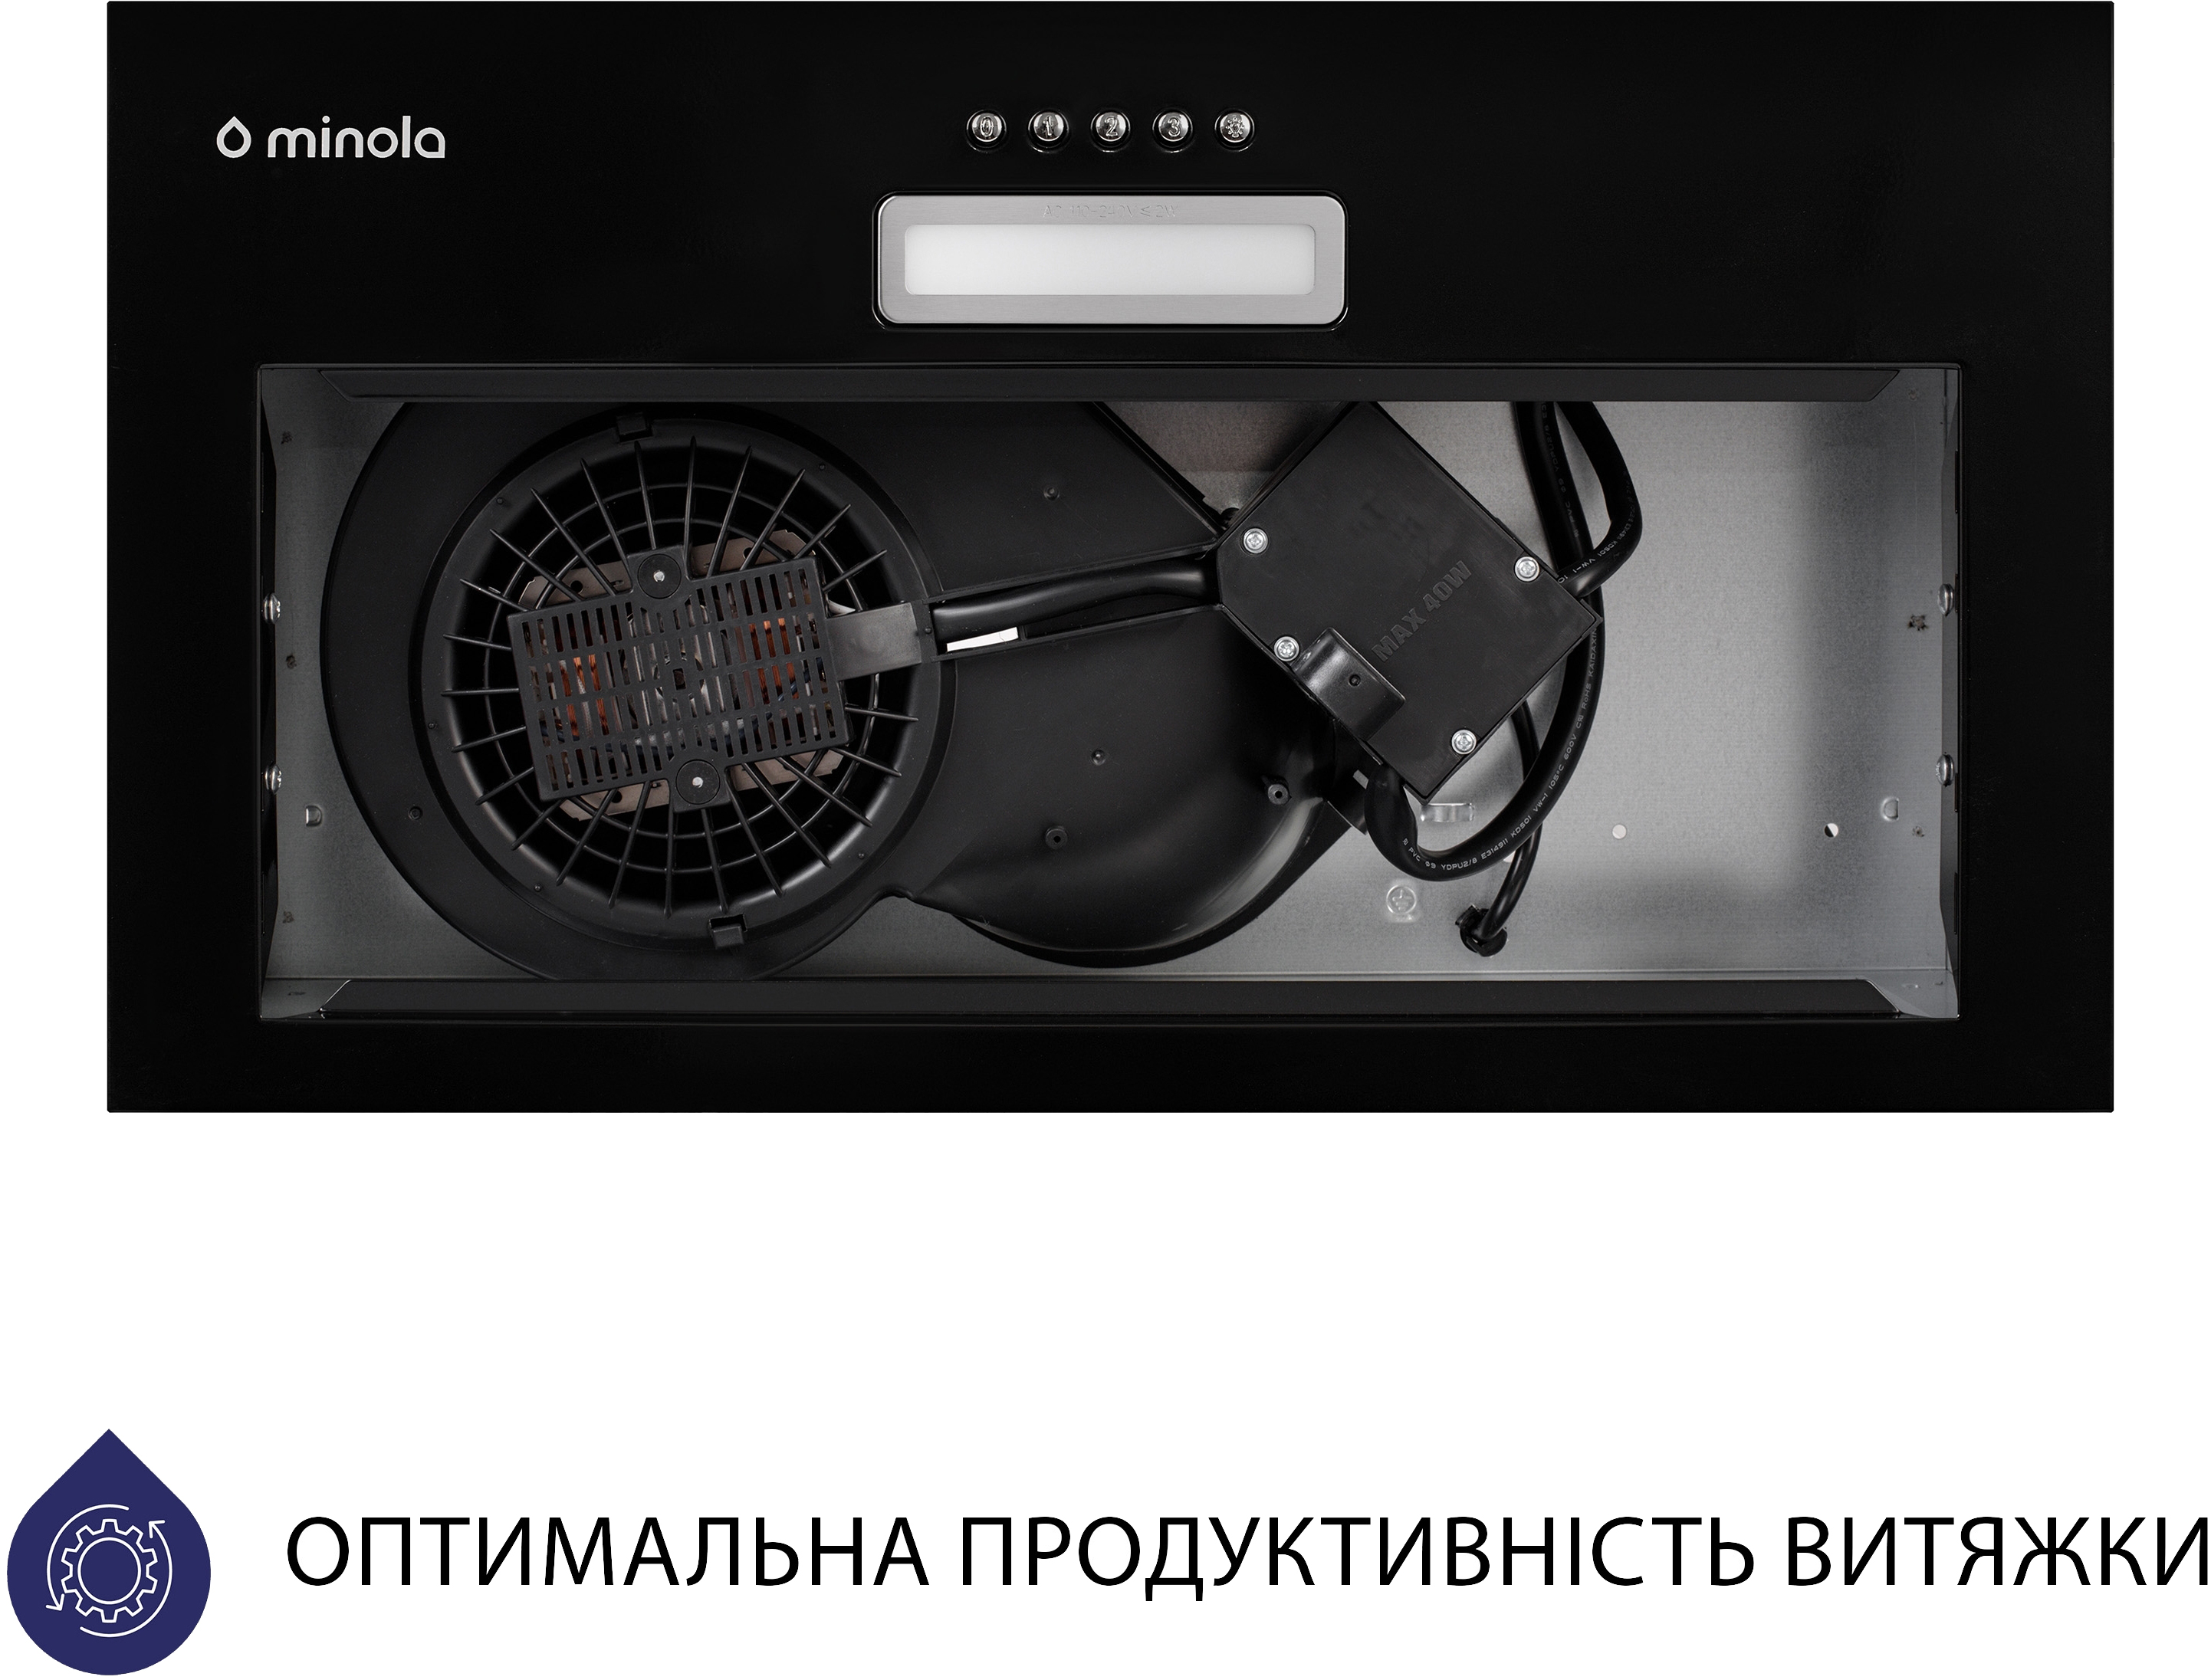 Кухонна витяжка Minola HBI 5025 BL LED відгуки - зображення 5